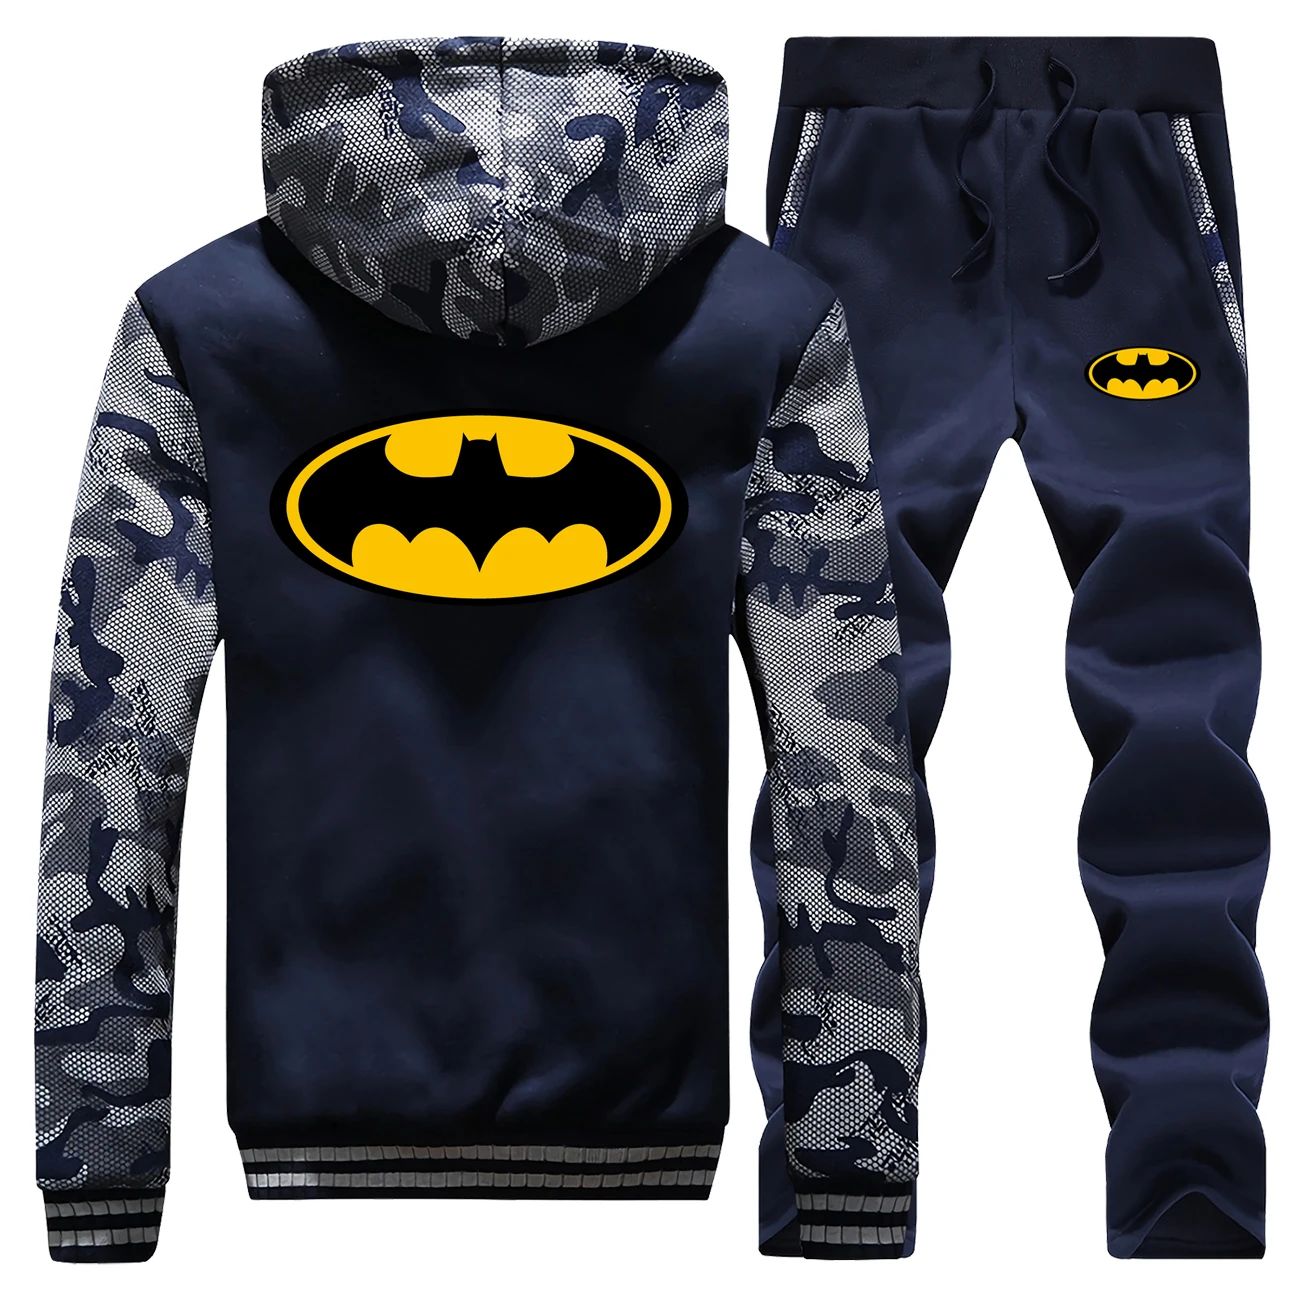 Популярный брендовый костюм, теплый мужской спортивный костюм DC супергерой Бэтмен, мужские комплекты, Осень-зима, толстая толстовка на молнии, спортивные штаны, мужской костюм s